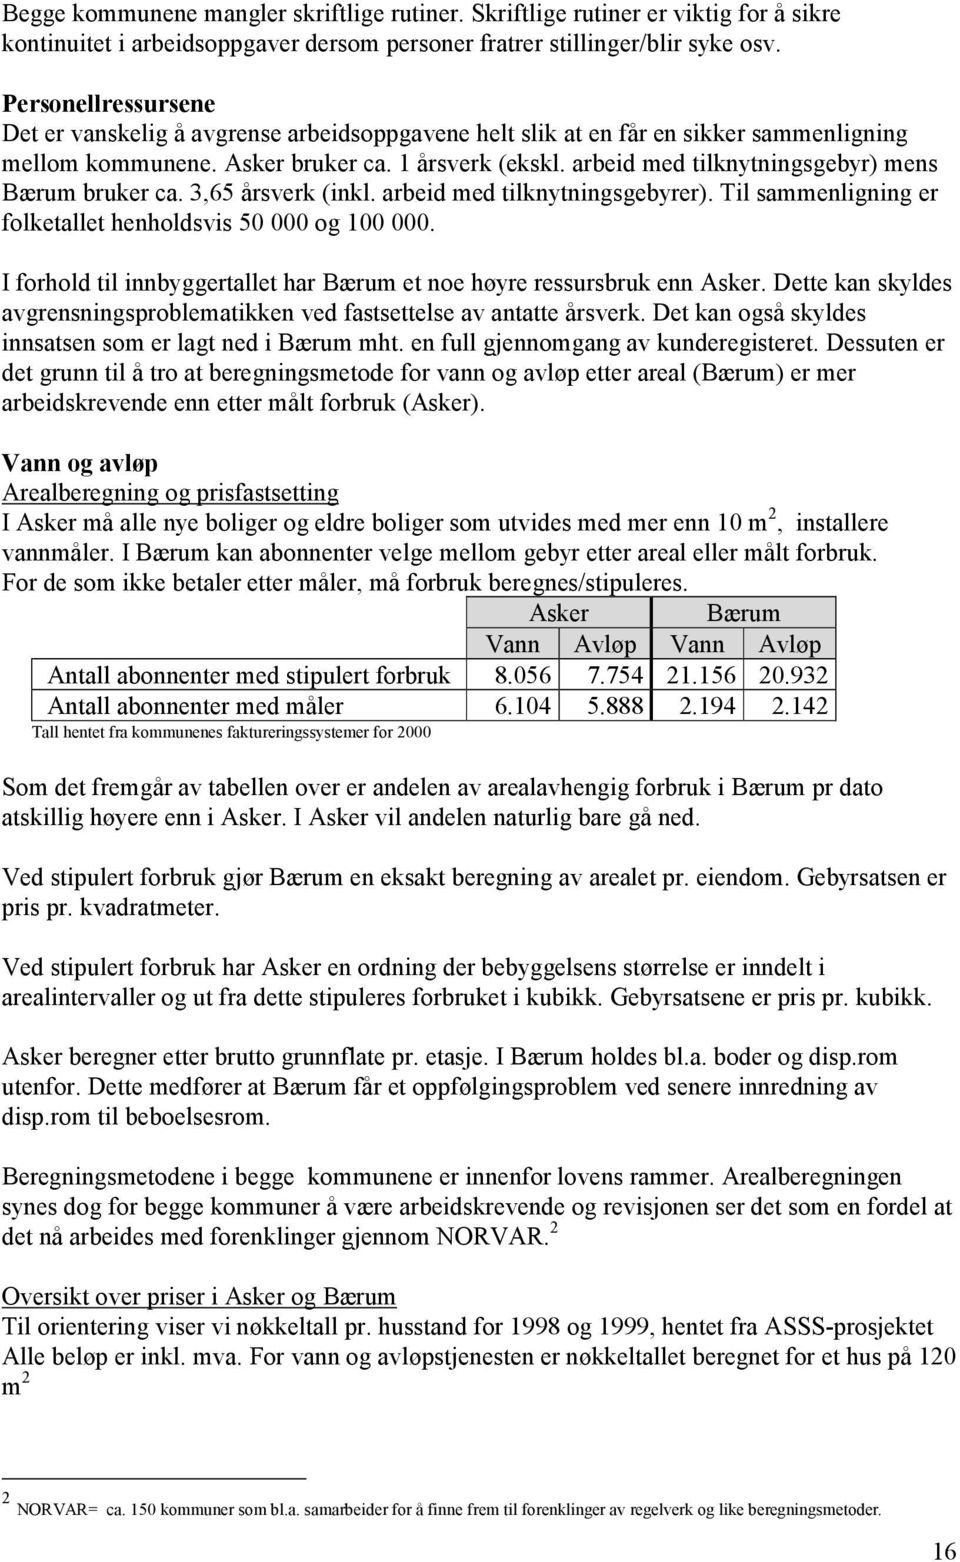 arbeid med tilknytningsgebyr) mens Bærum bruker ca. 3,65 årsverk (inkl. arbeid med tilknytningsgebyrer). Til sammenligning er folketallet henholdsvis 50 000 og 100 000.